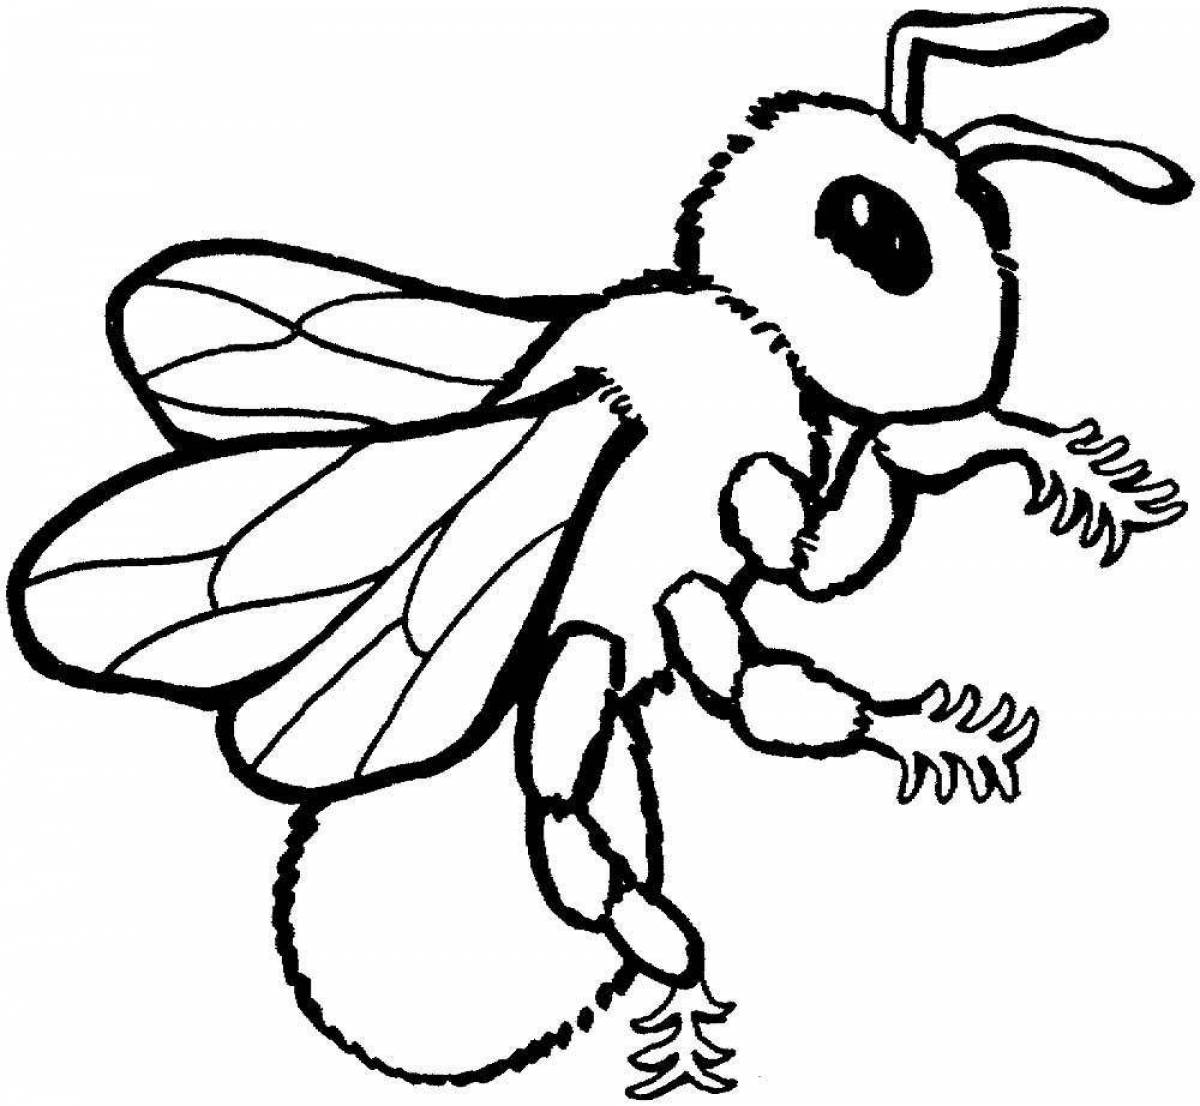 Увлекательная раскраска осы для детей